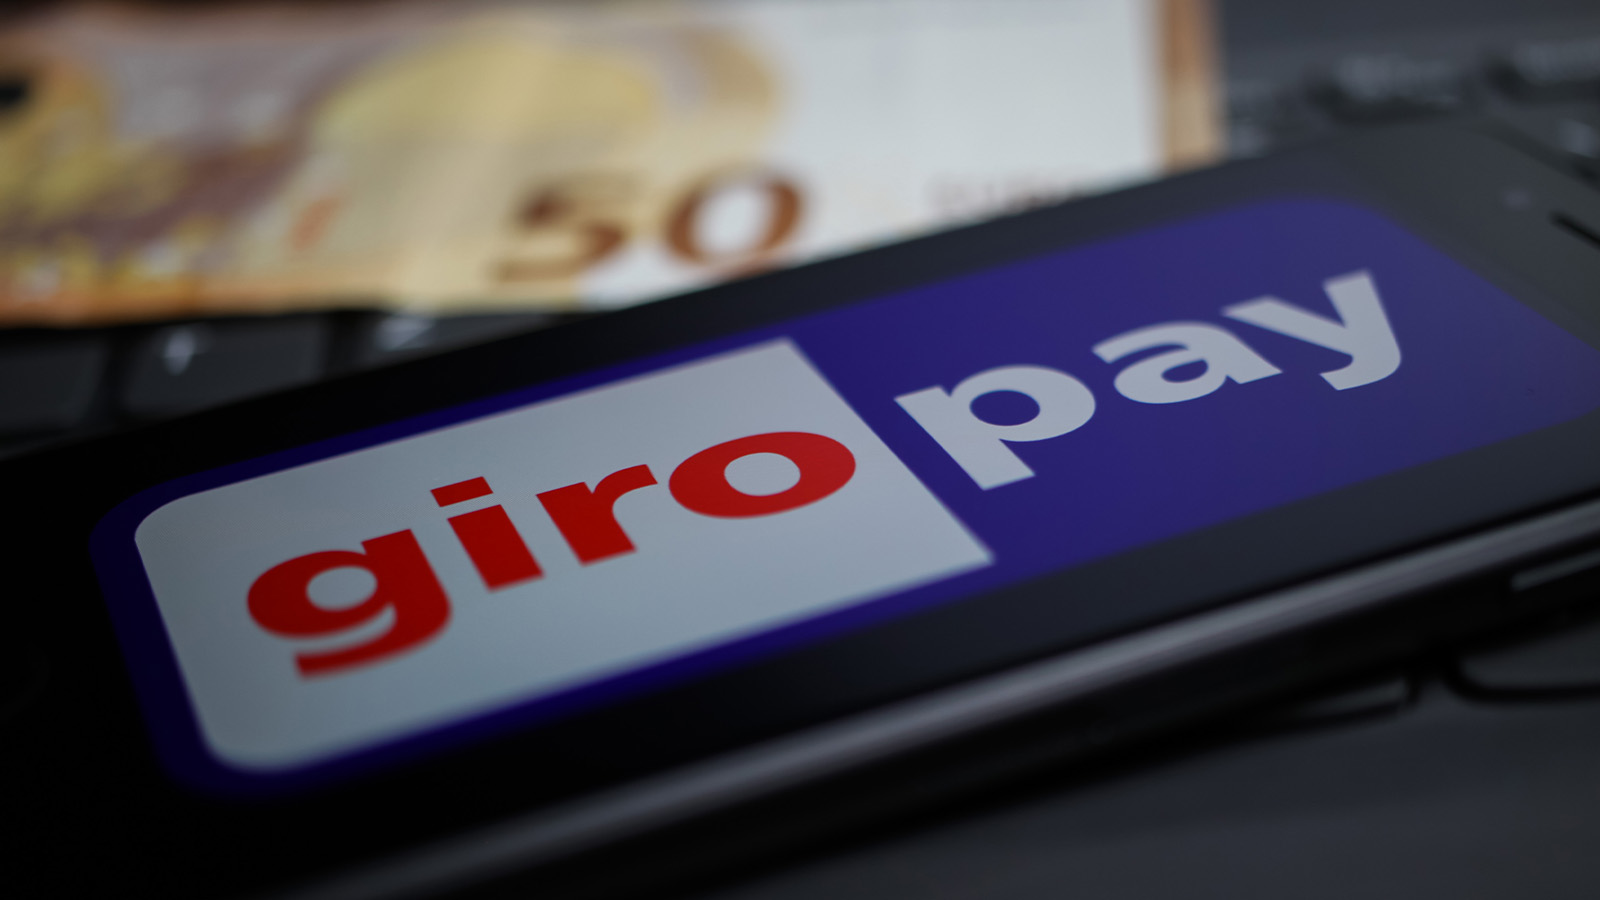 Banken wollen Giropay im Wettbewerb stärken